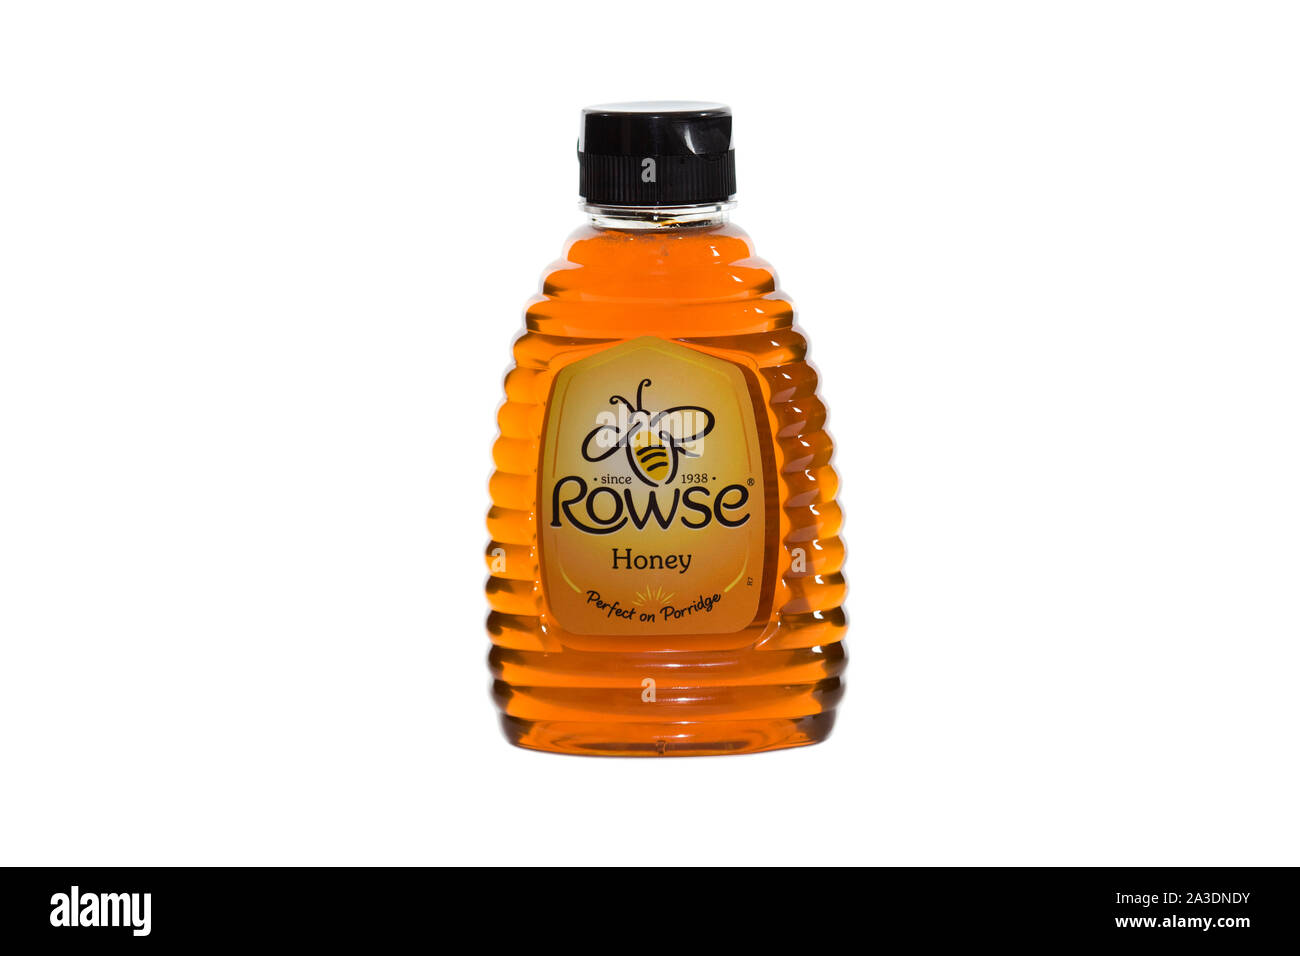 Rowse honey bottle on isolated white background Stock Photo